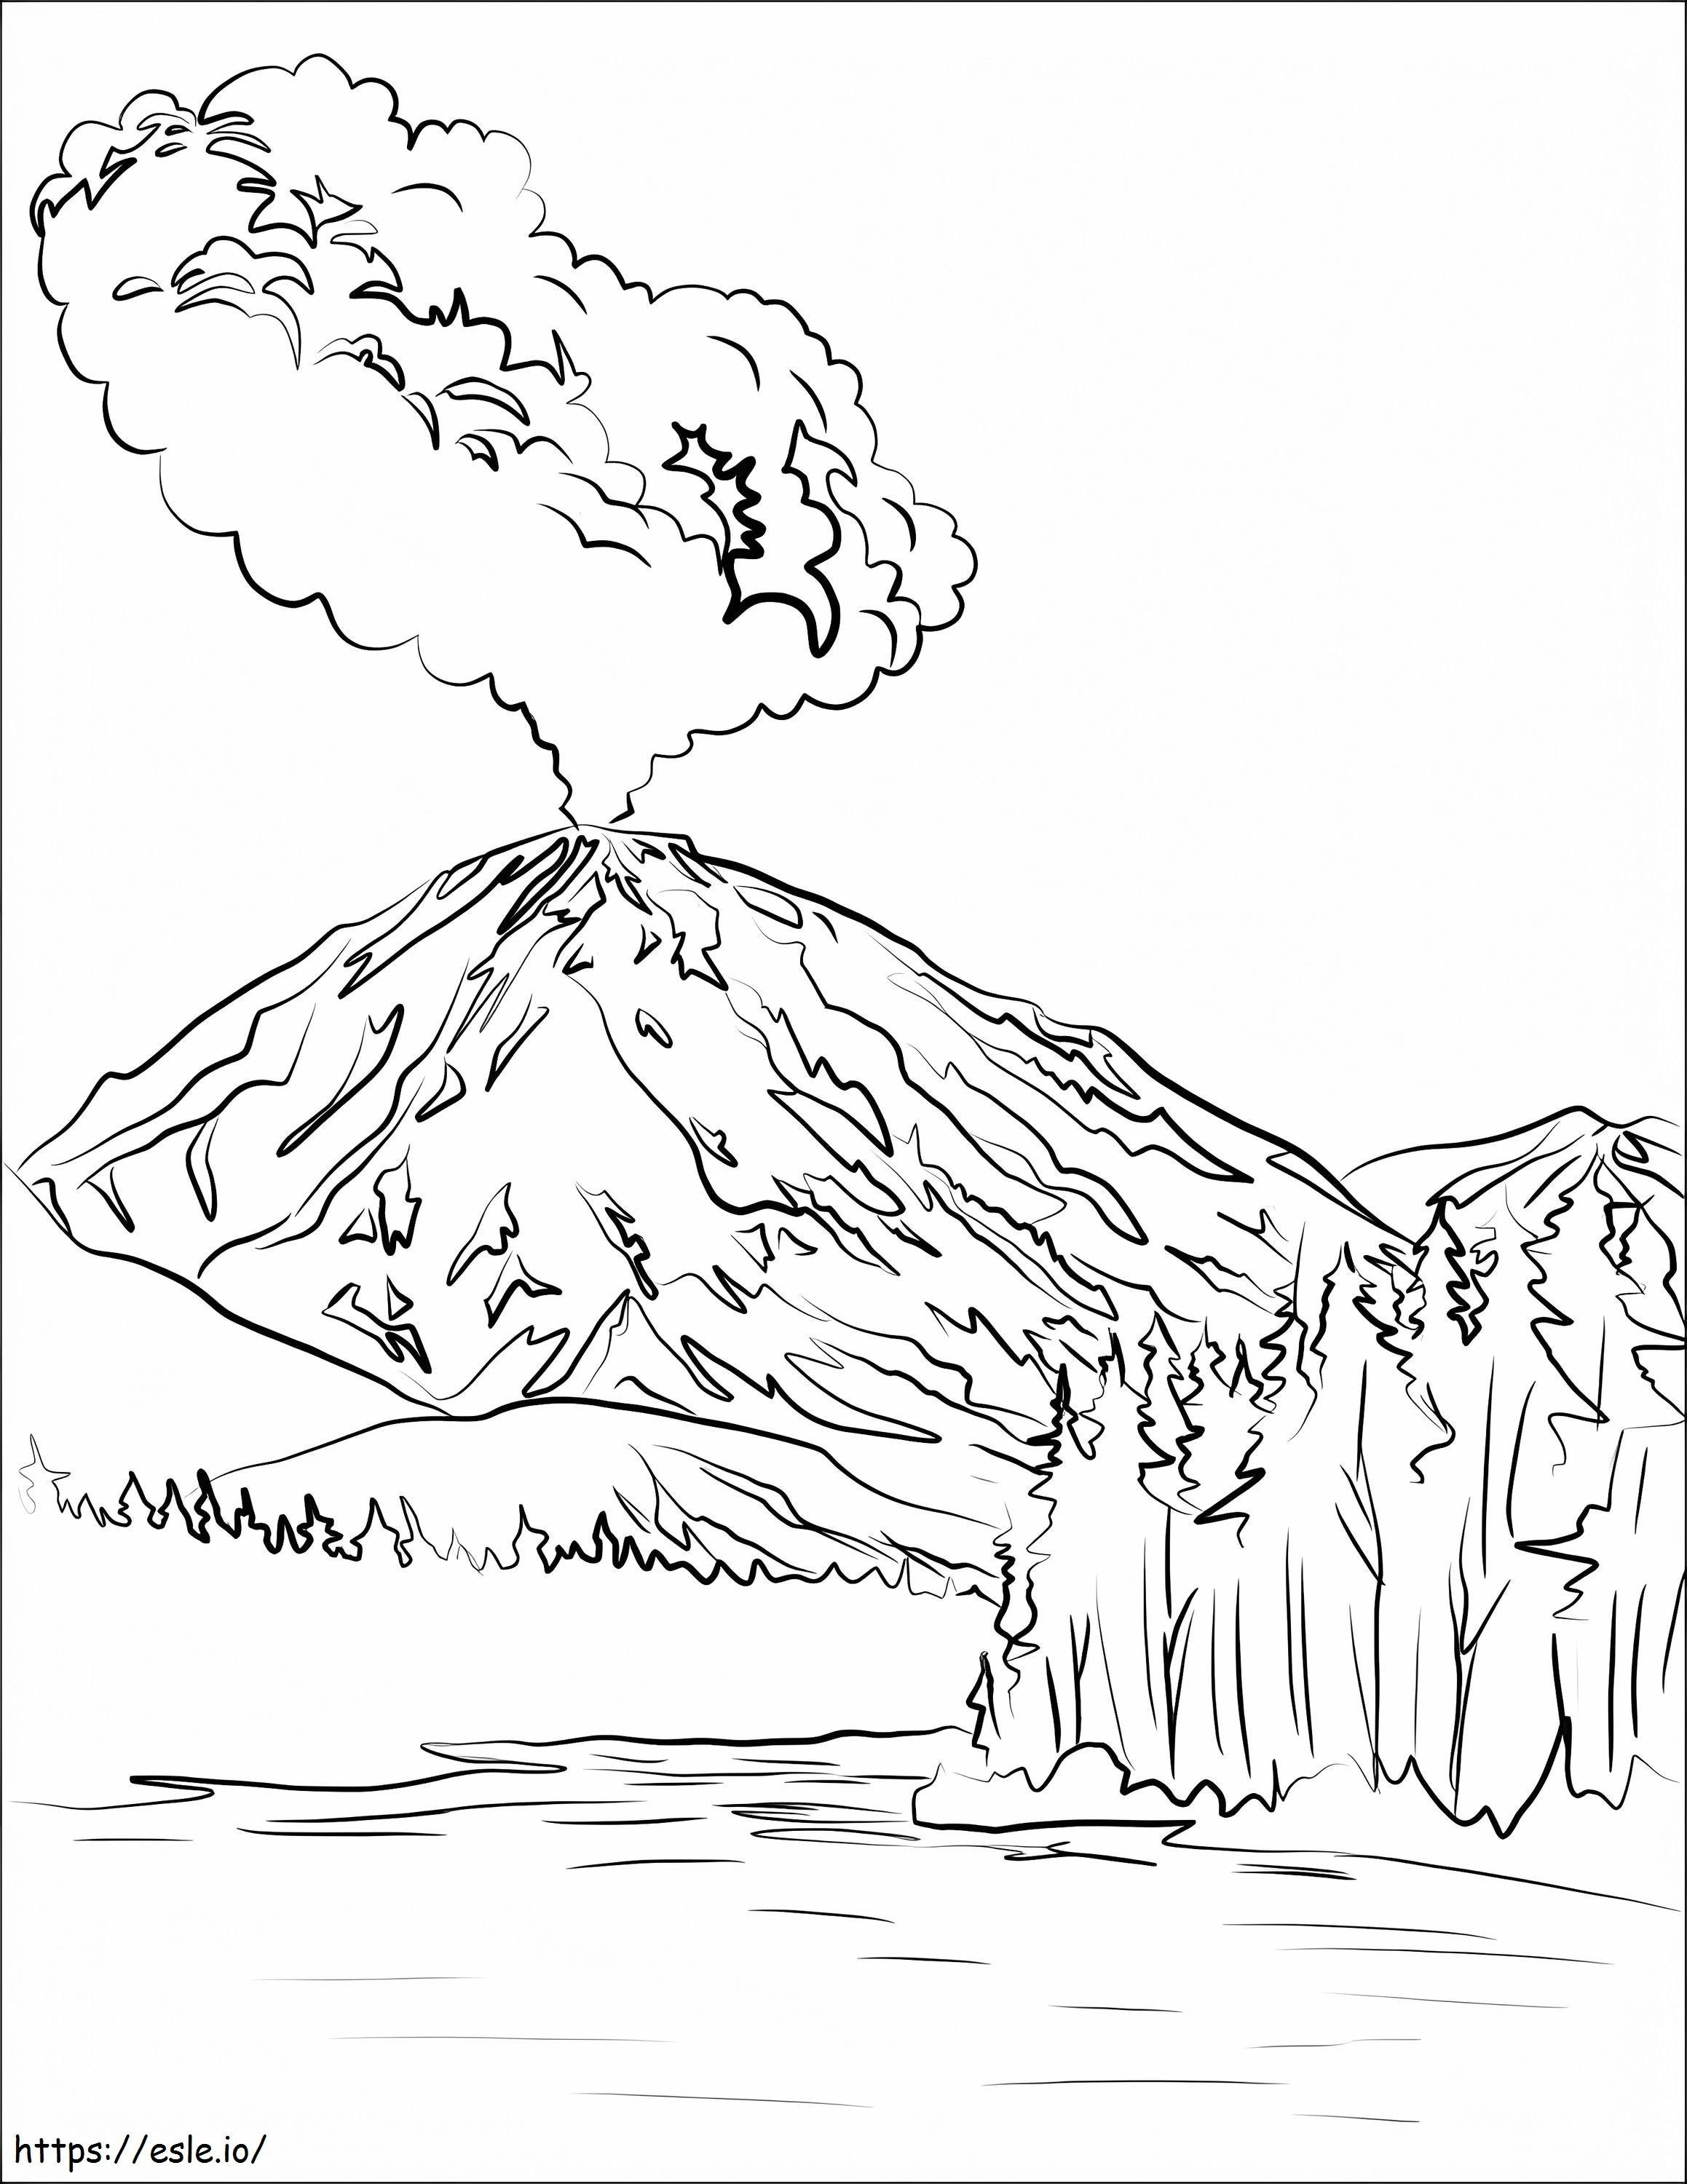 Eruzione del vulcano Lassen Peak da colorare